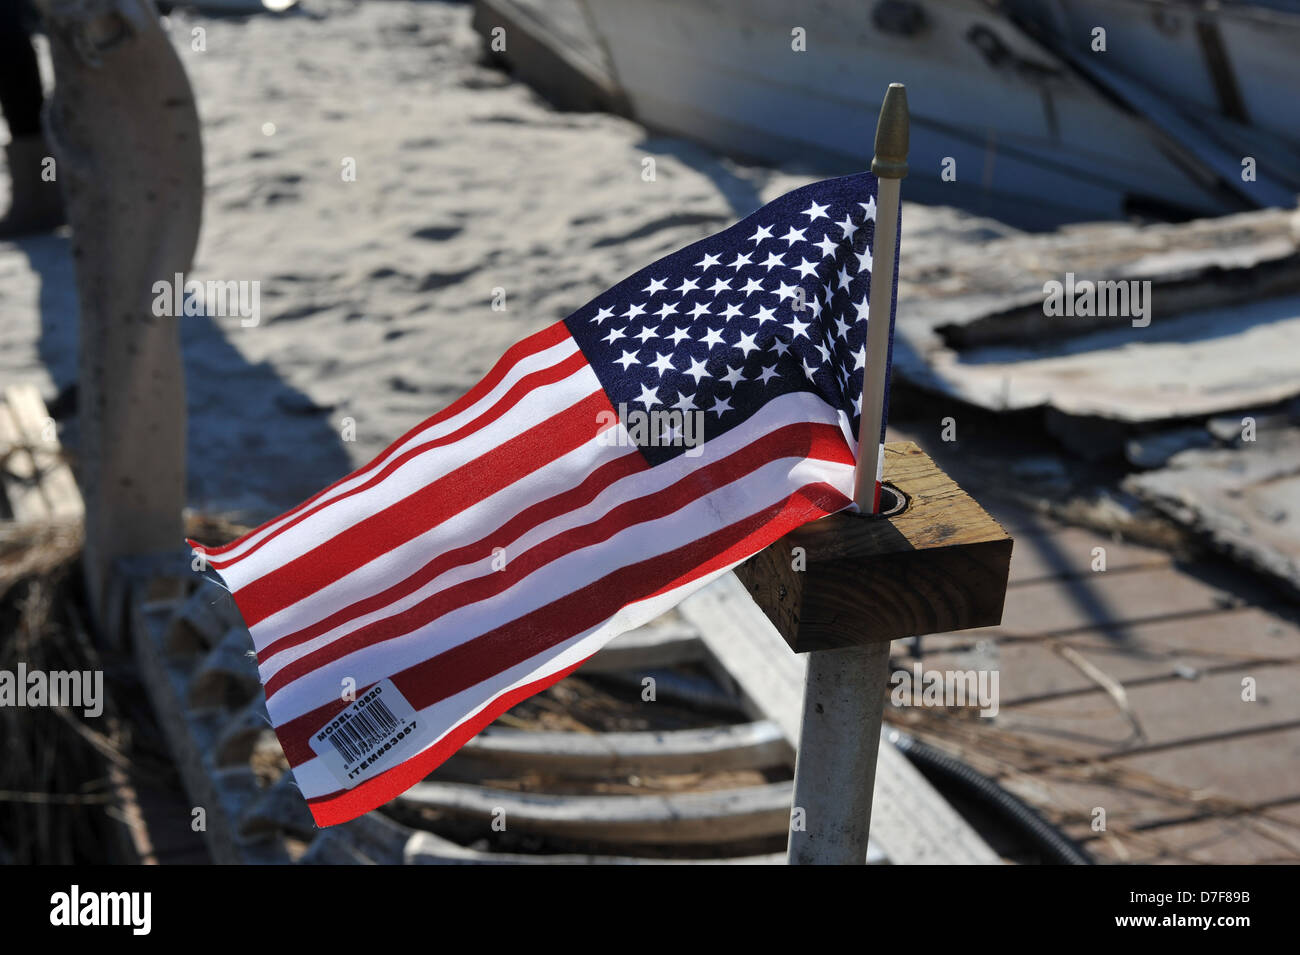 QUEENS, NY - NOVEMBER 09: Eine amerikanische Flagge fliegt aus dem verbrannten Haus in einem beschädigten Bereich Stockfoto